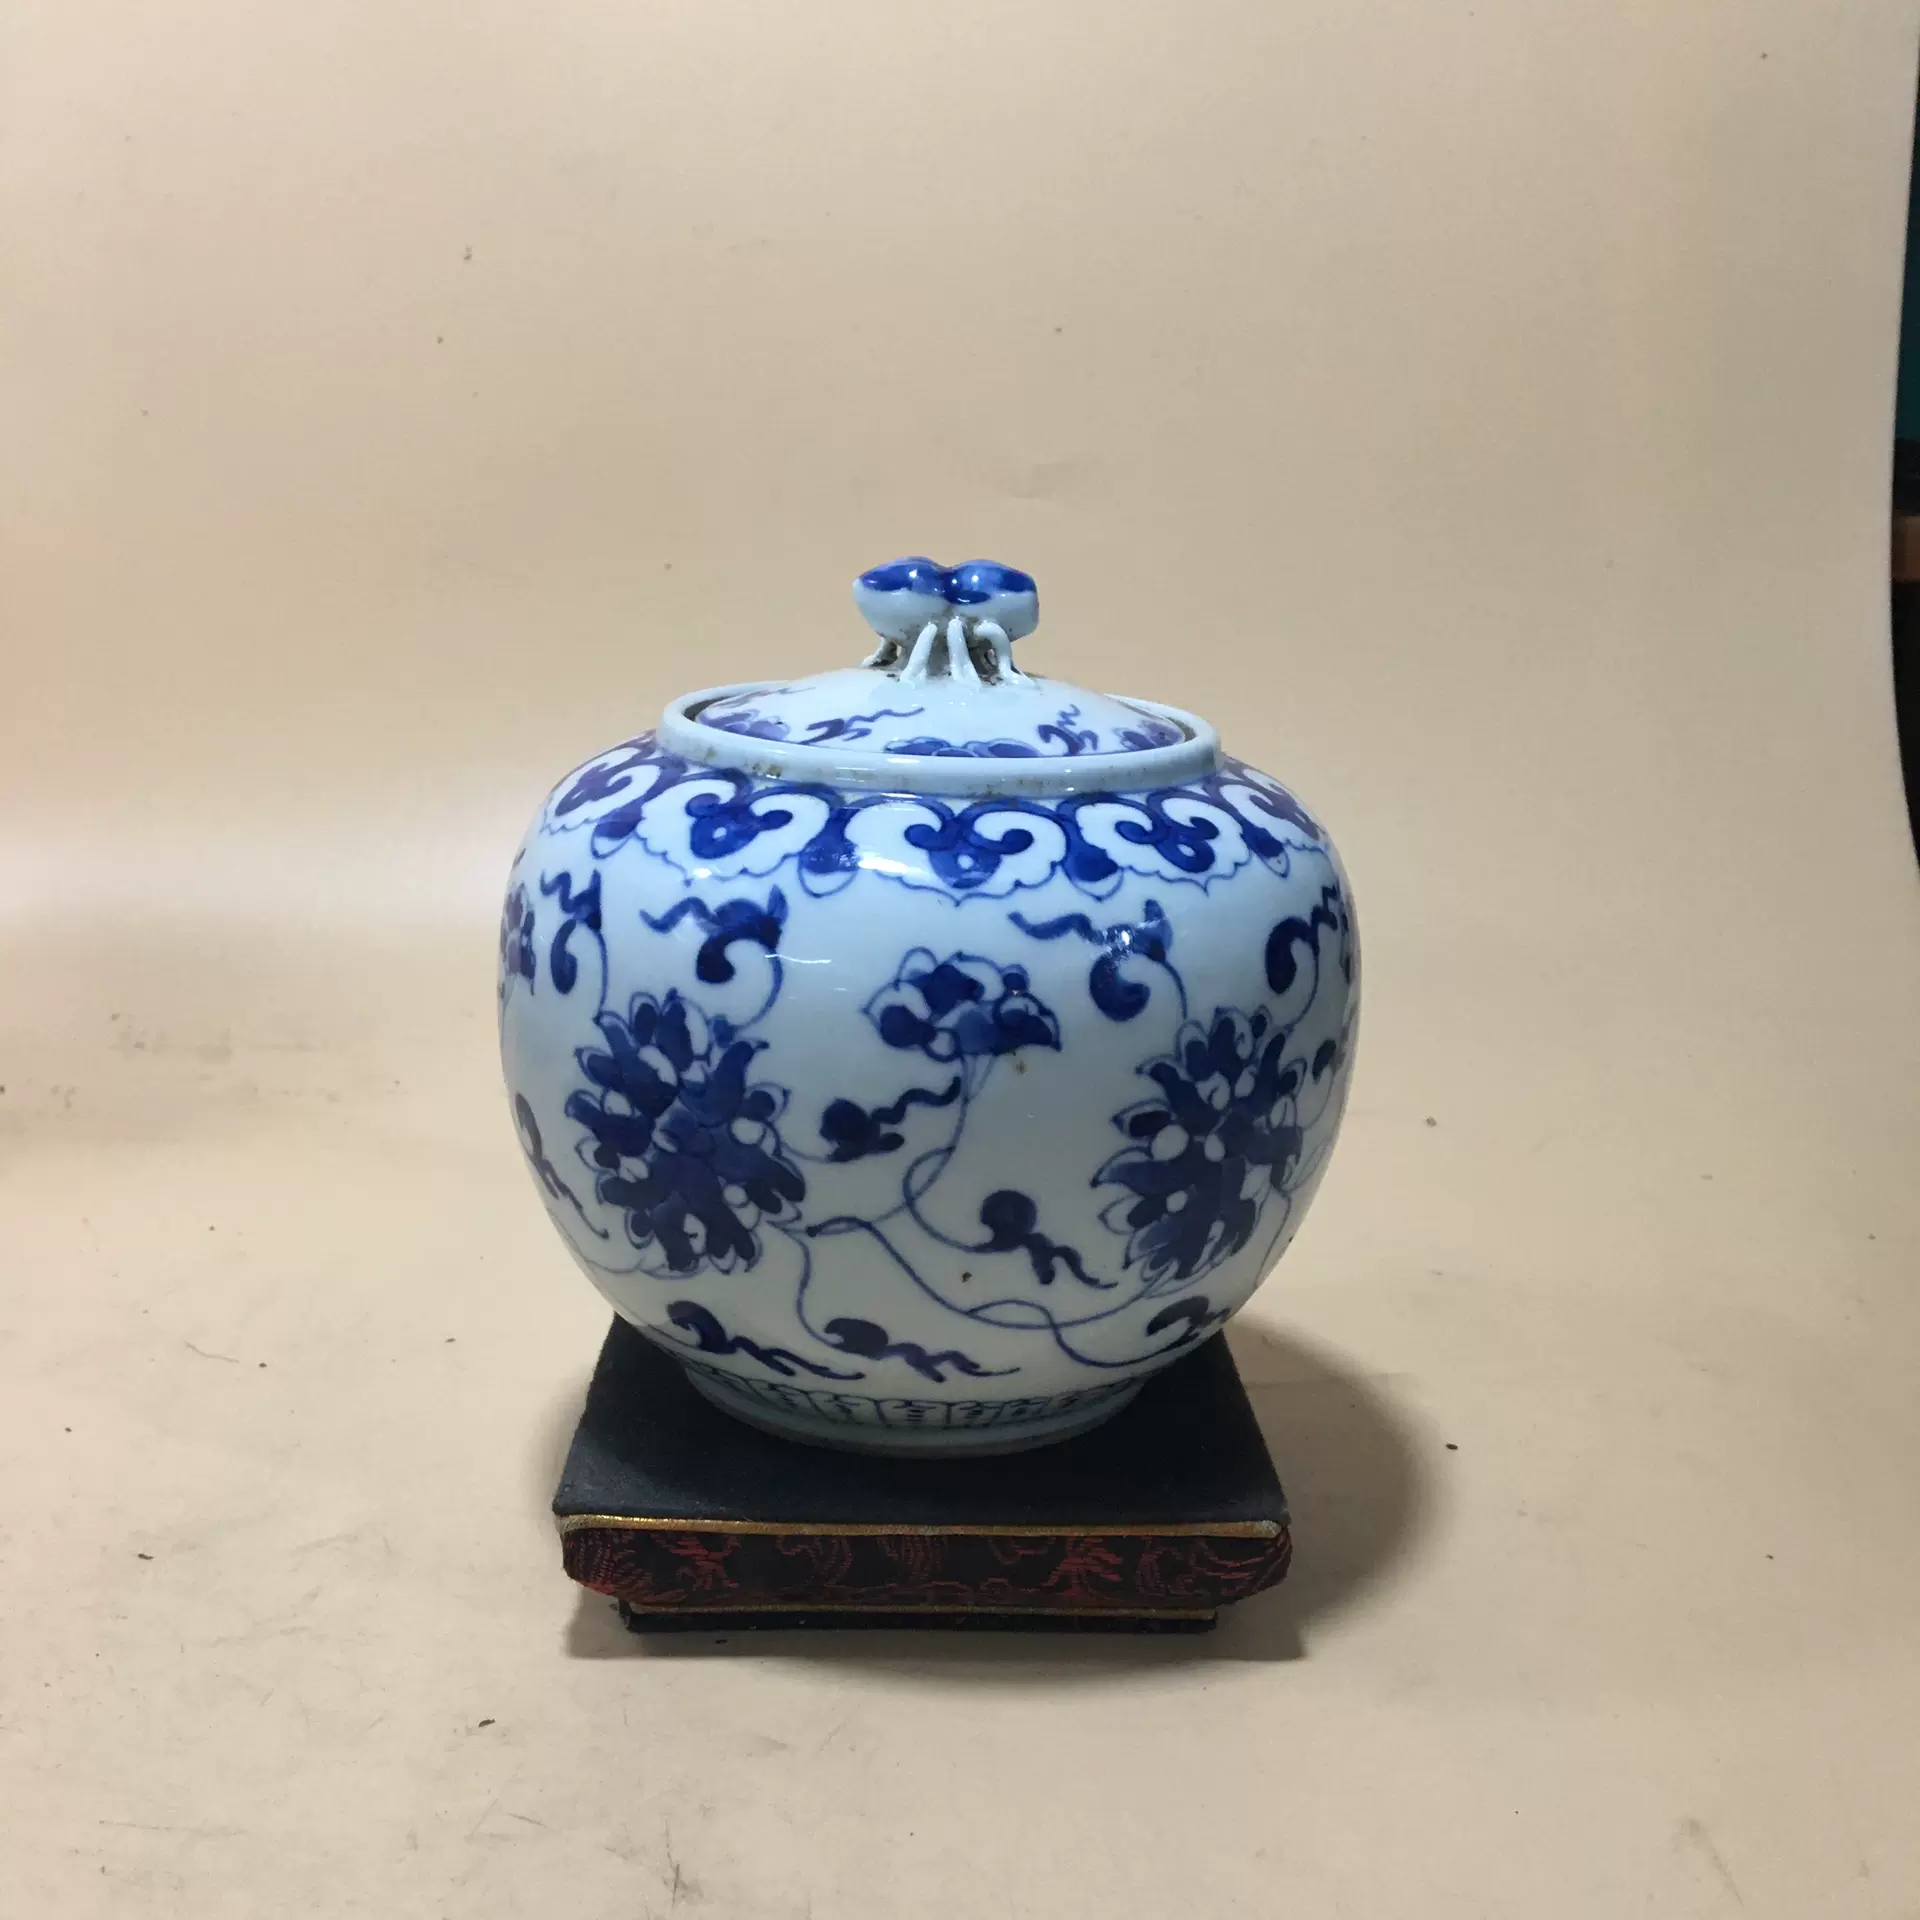 清晚期青花缠枝莲茶叶罐古董古玩瓷器收藏摆件旧货陶瓷花瓶老物件-Taobao